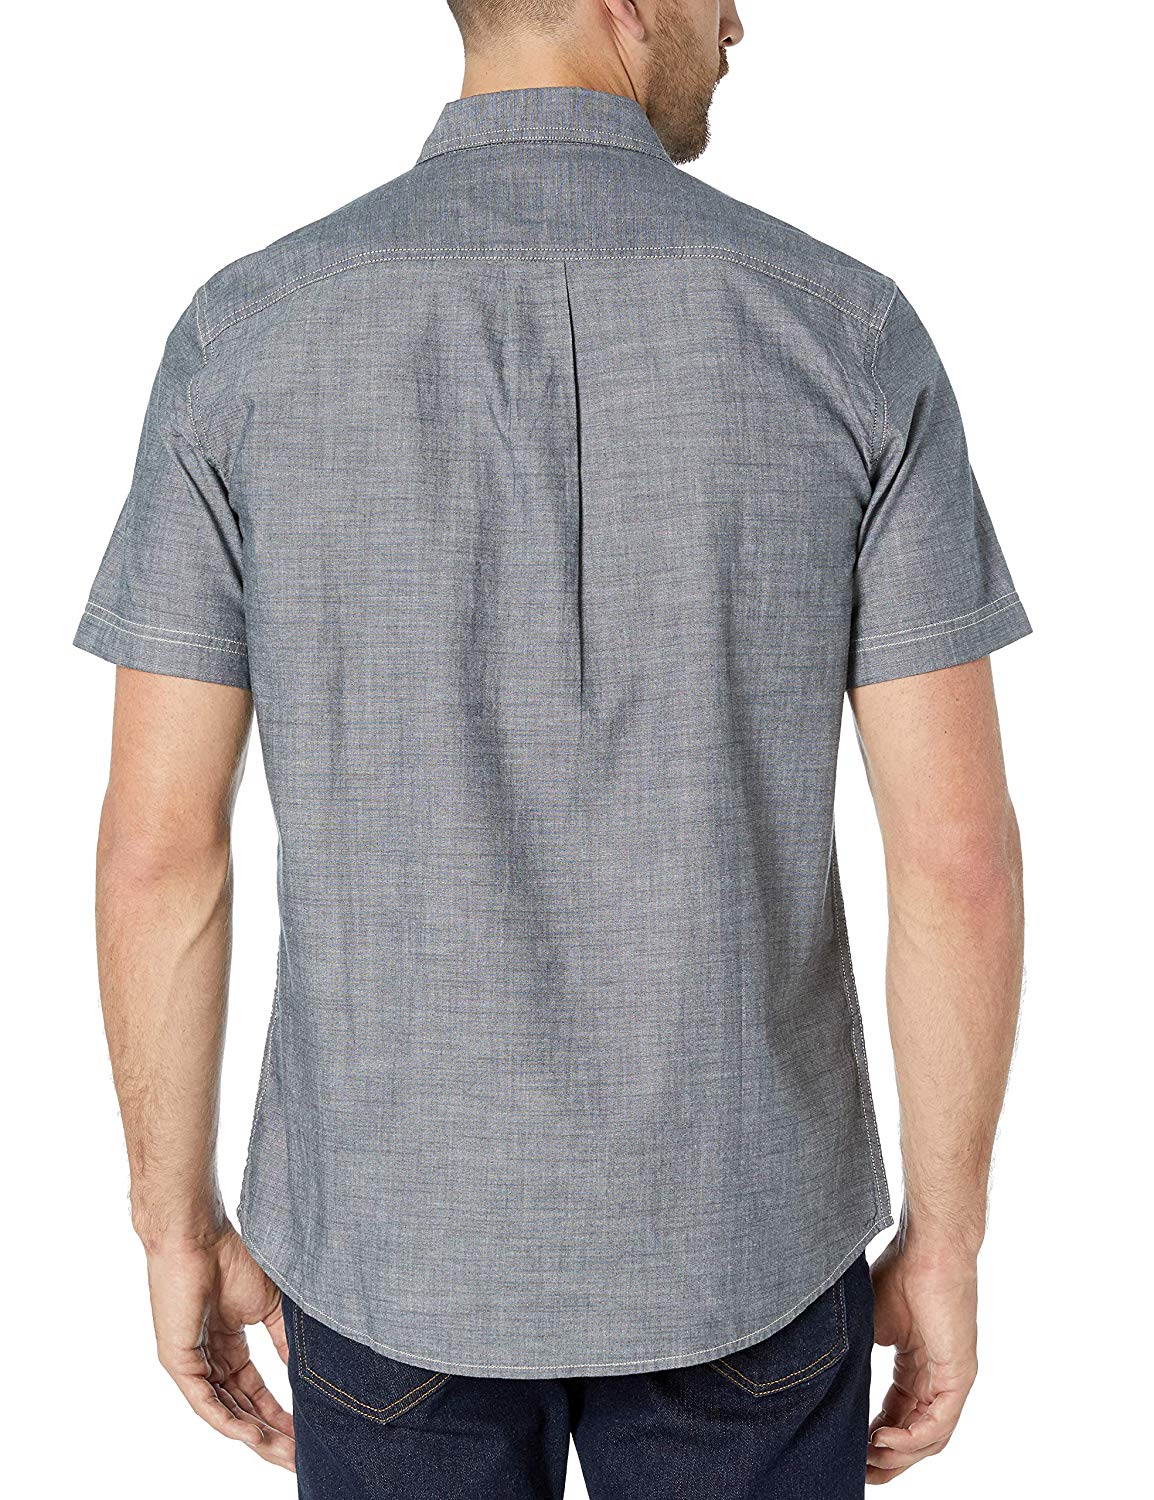 Essentials Men's Standard Regular-Fit Short-Sleeve, Grey, Size Large ...